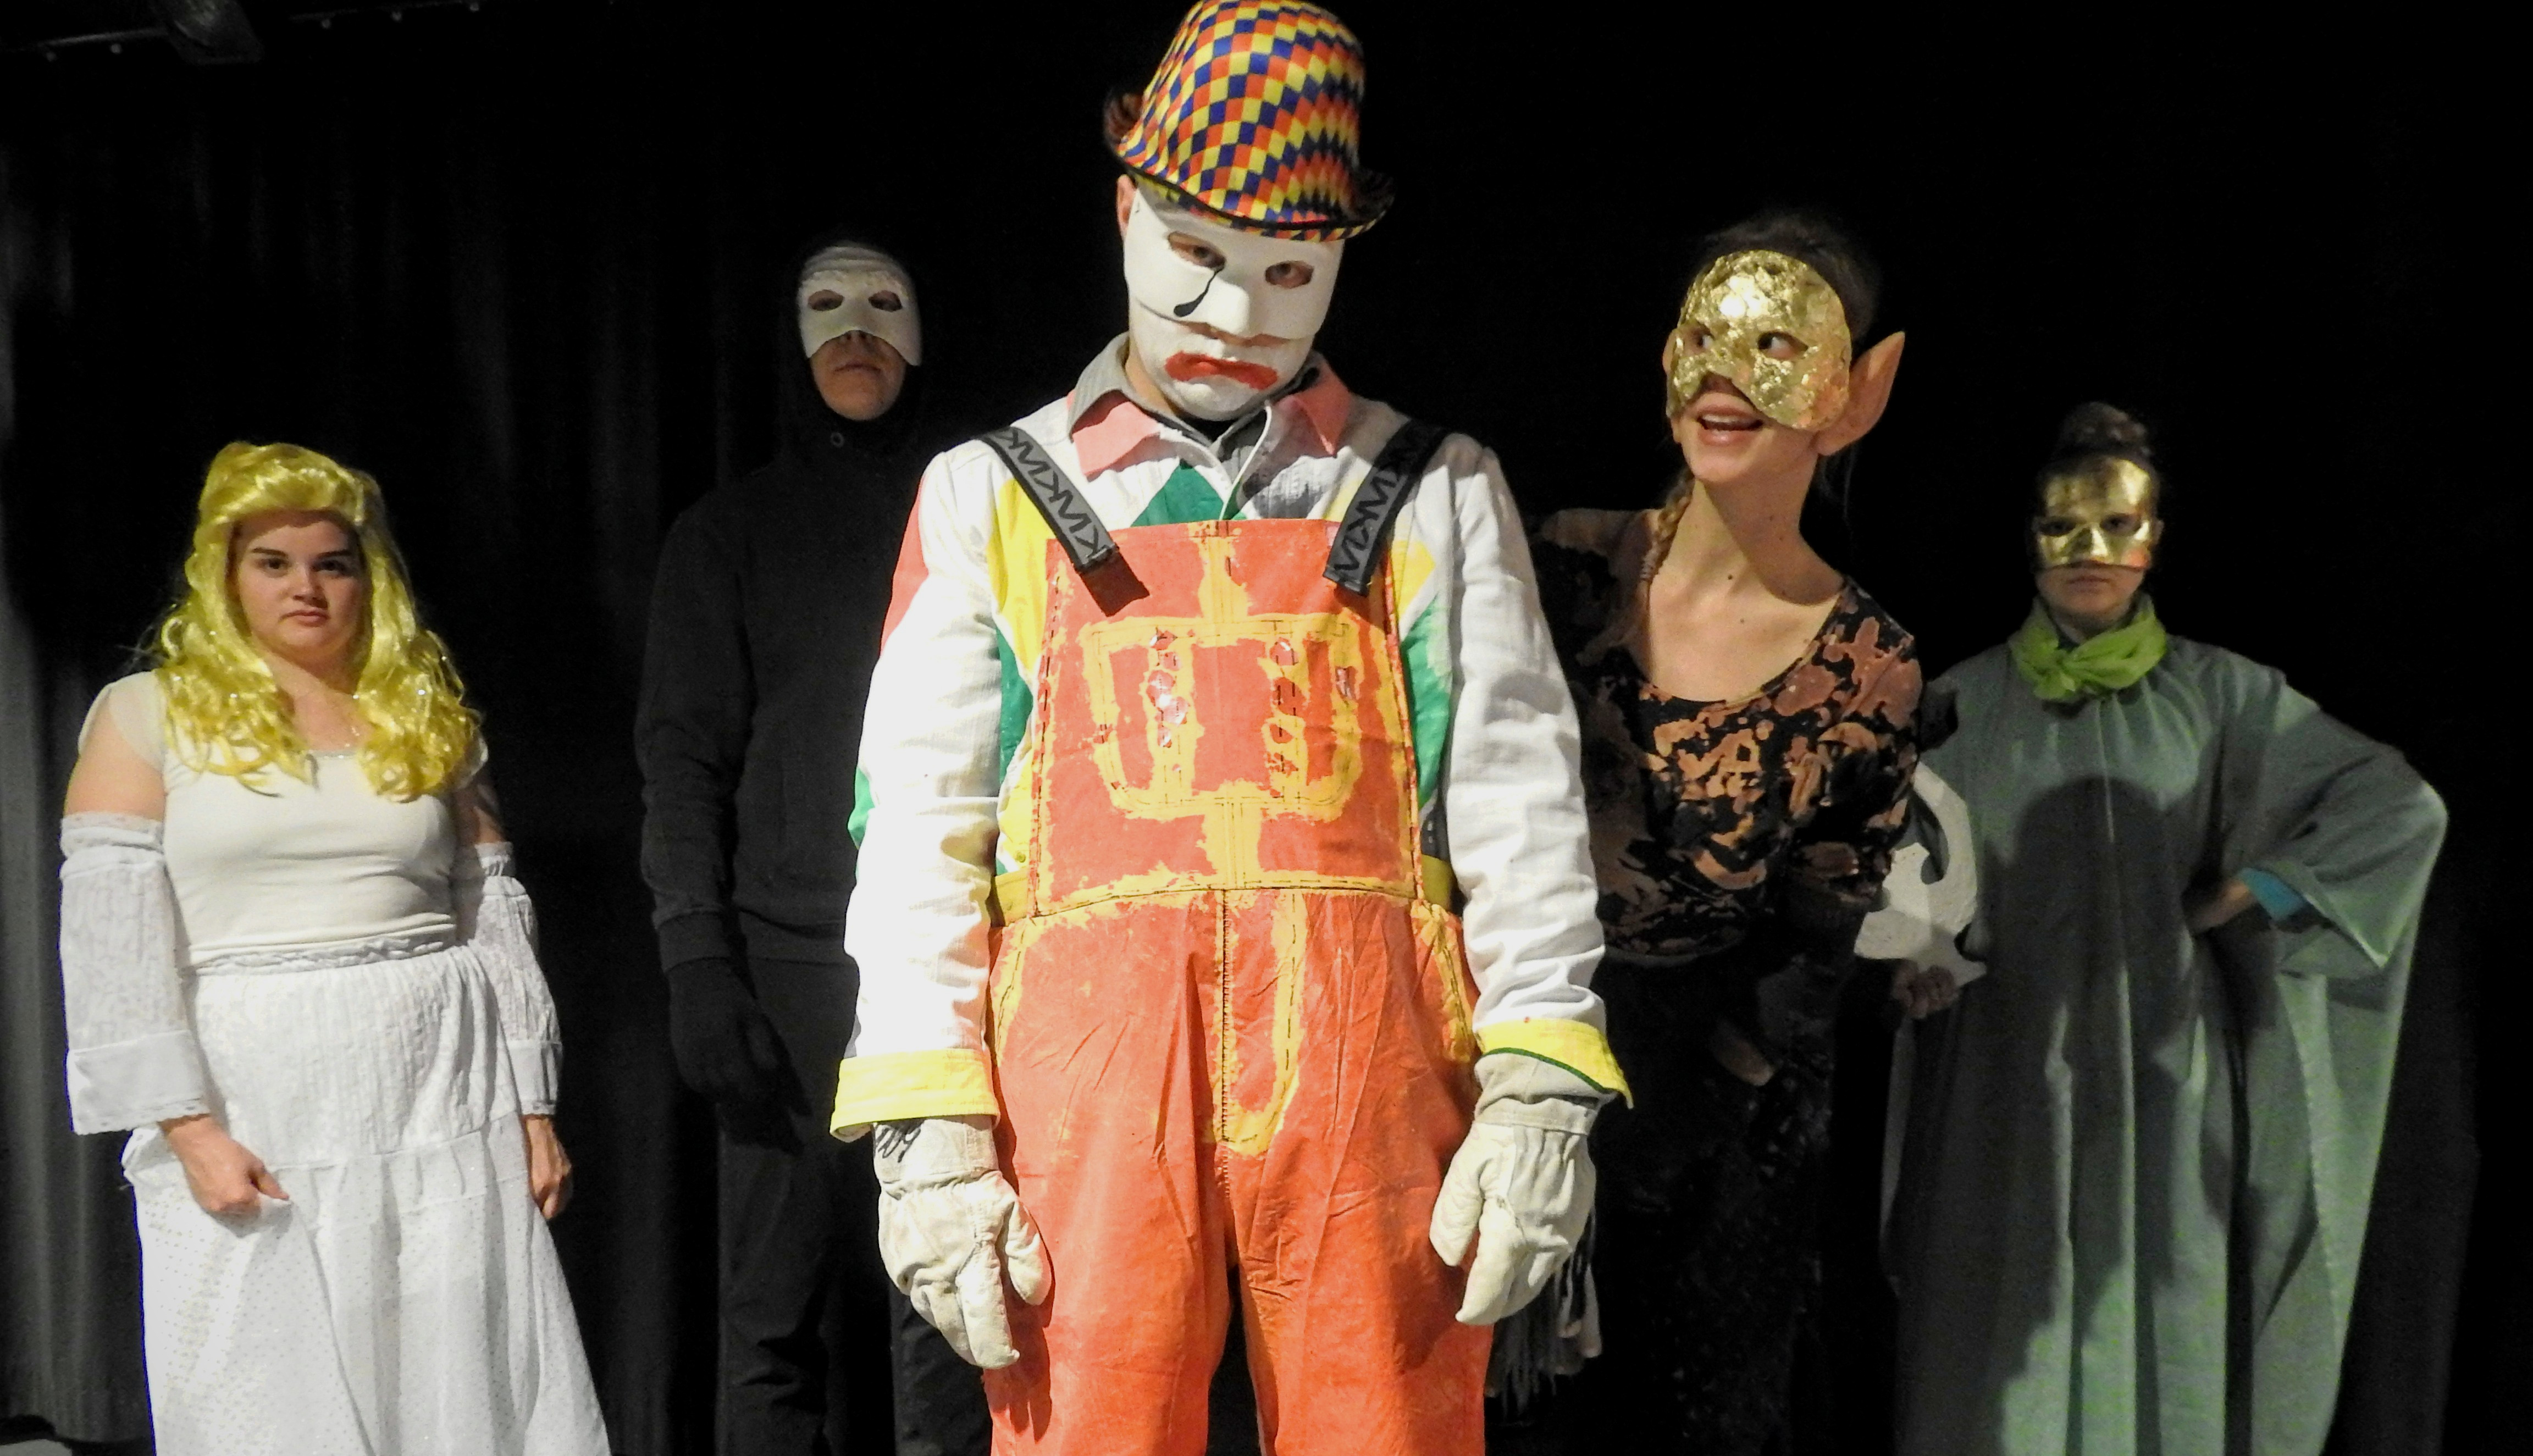 Oulun Ylioppilasteatterin näytelmä Narri on raskas, mutta uskaltavalla tavalla voimakas kokemus